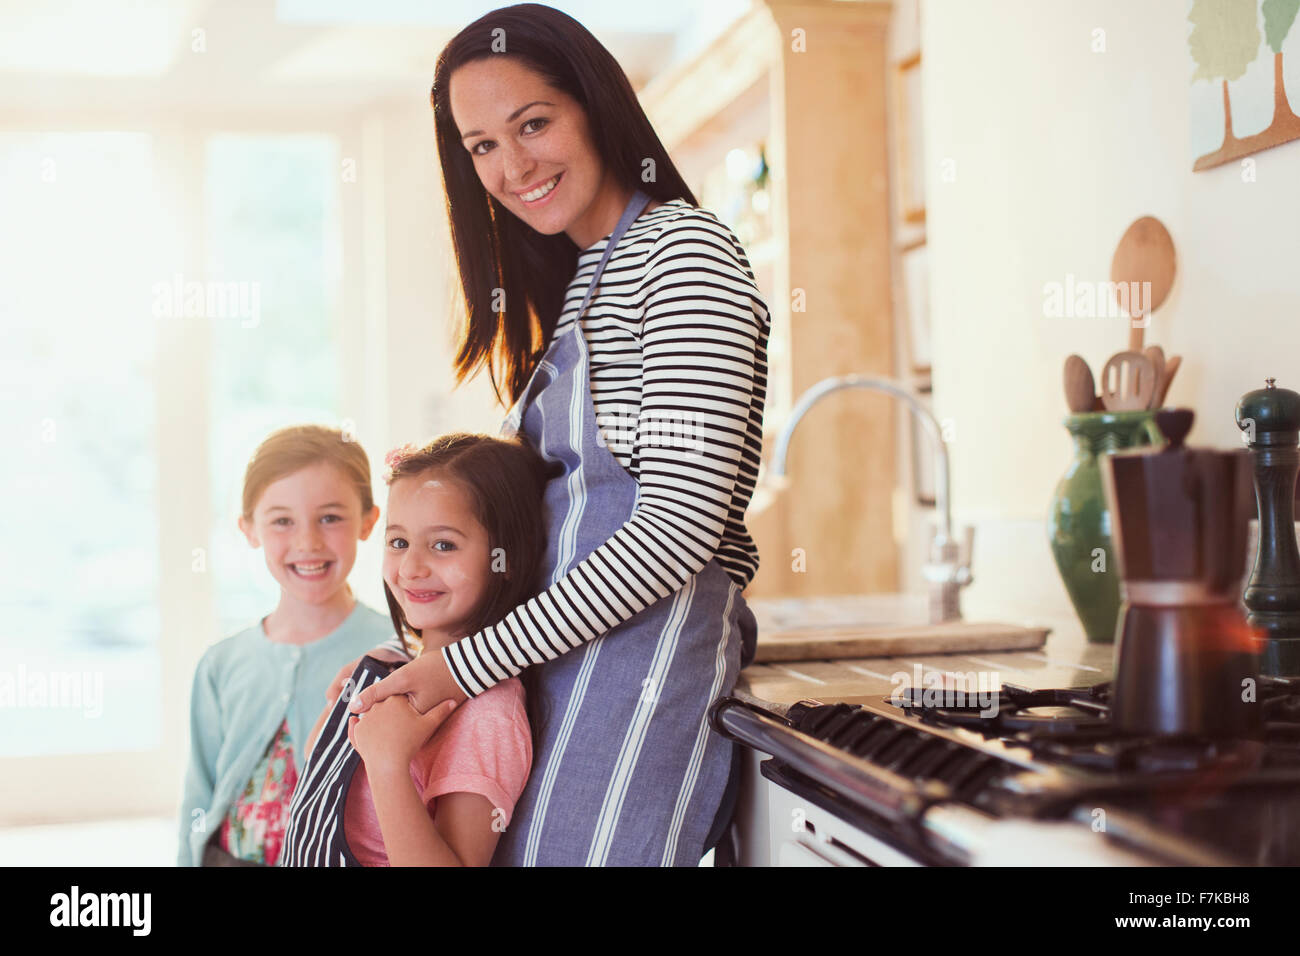 Porträt, Lächeln, Mutter und Töchter in Küche Stockfoto